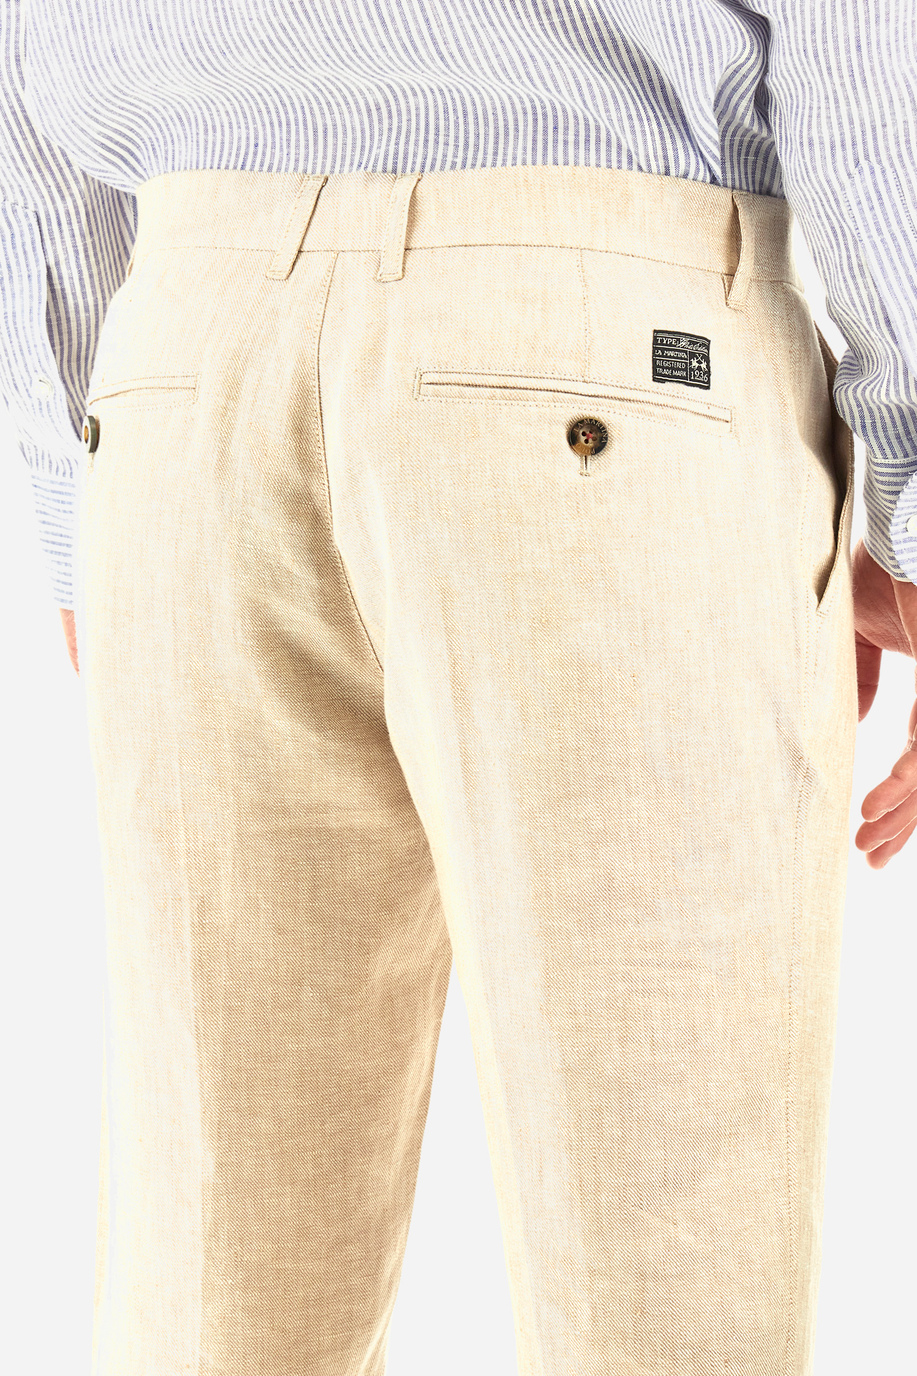 Pantalone chino regular fit in lino - Yngraham - Pantaloni | La Martina - Official Online Shop